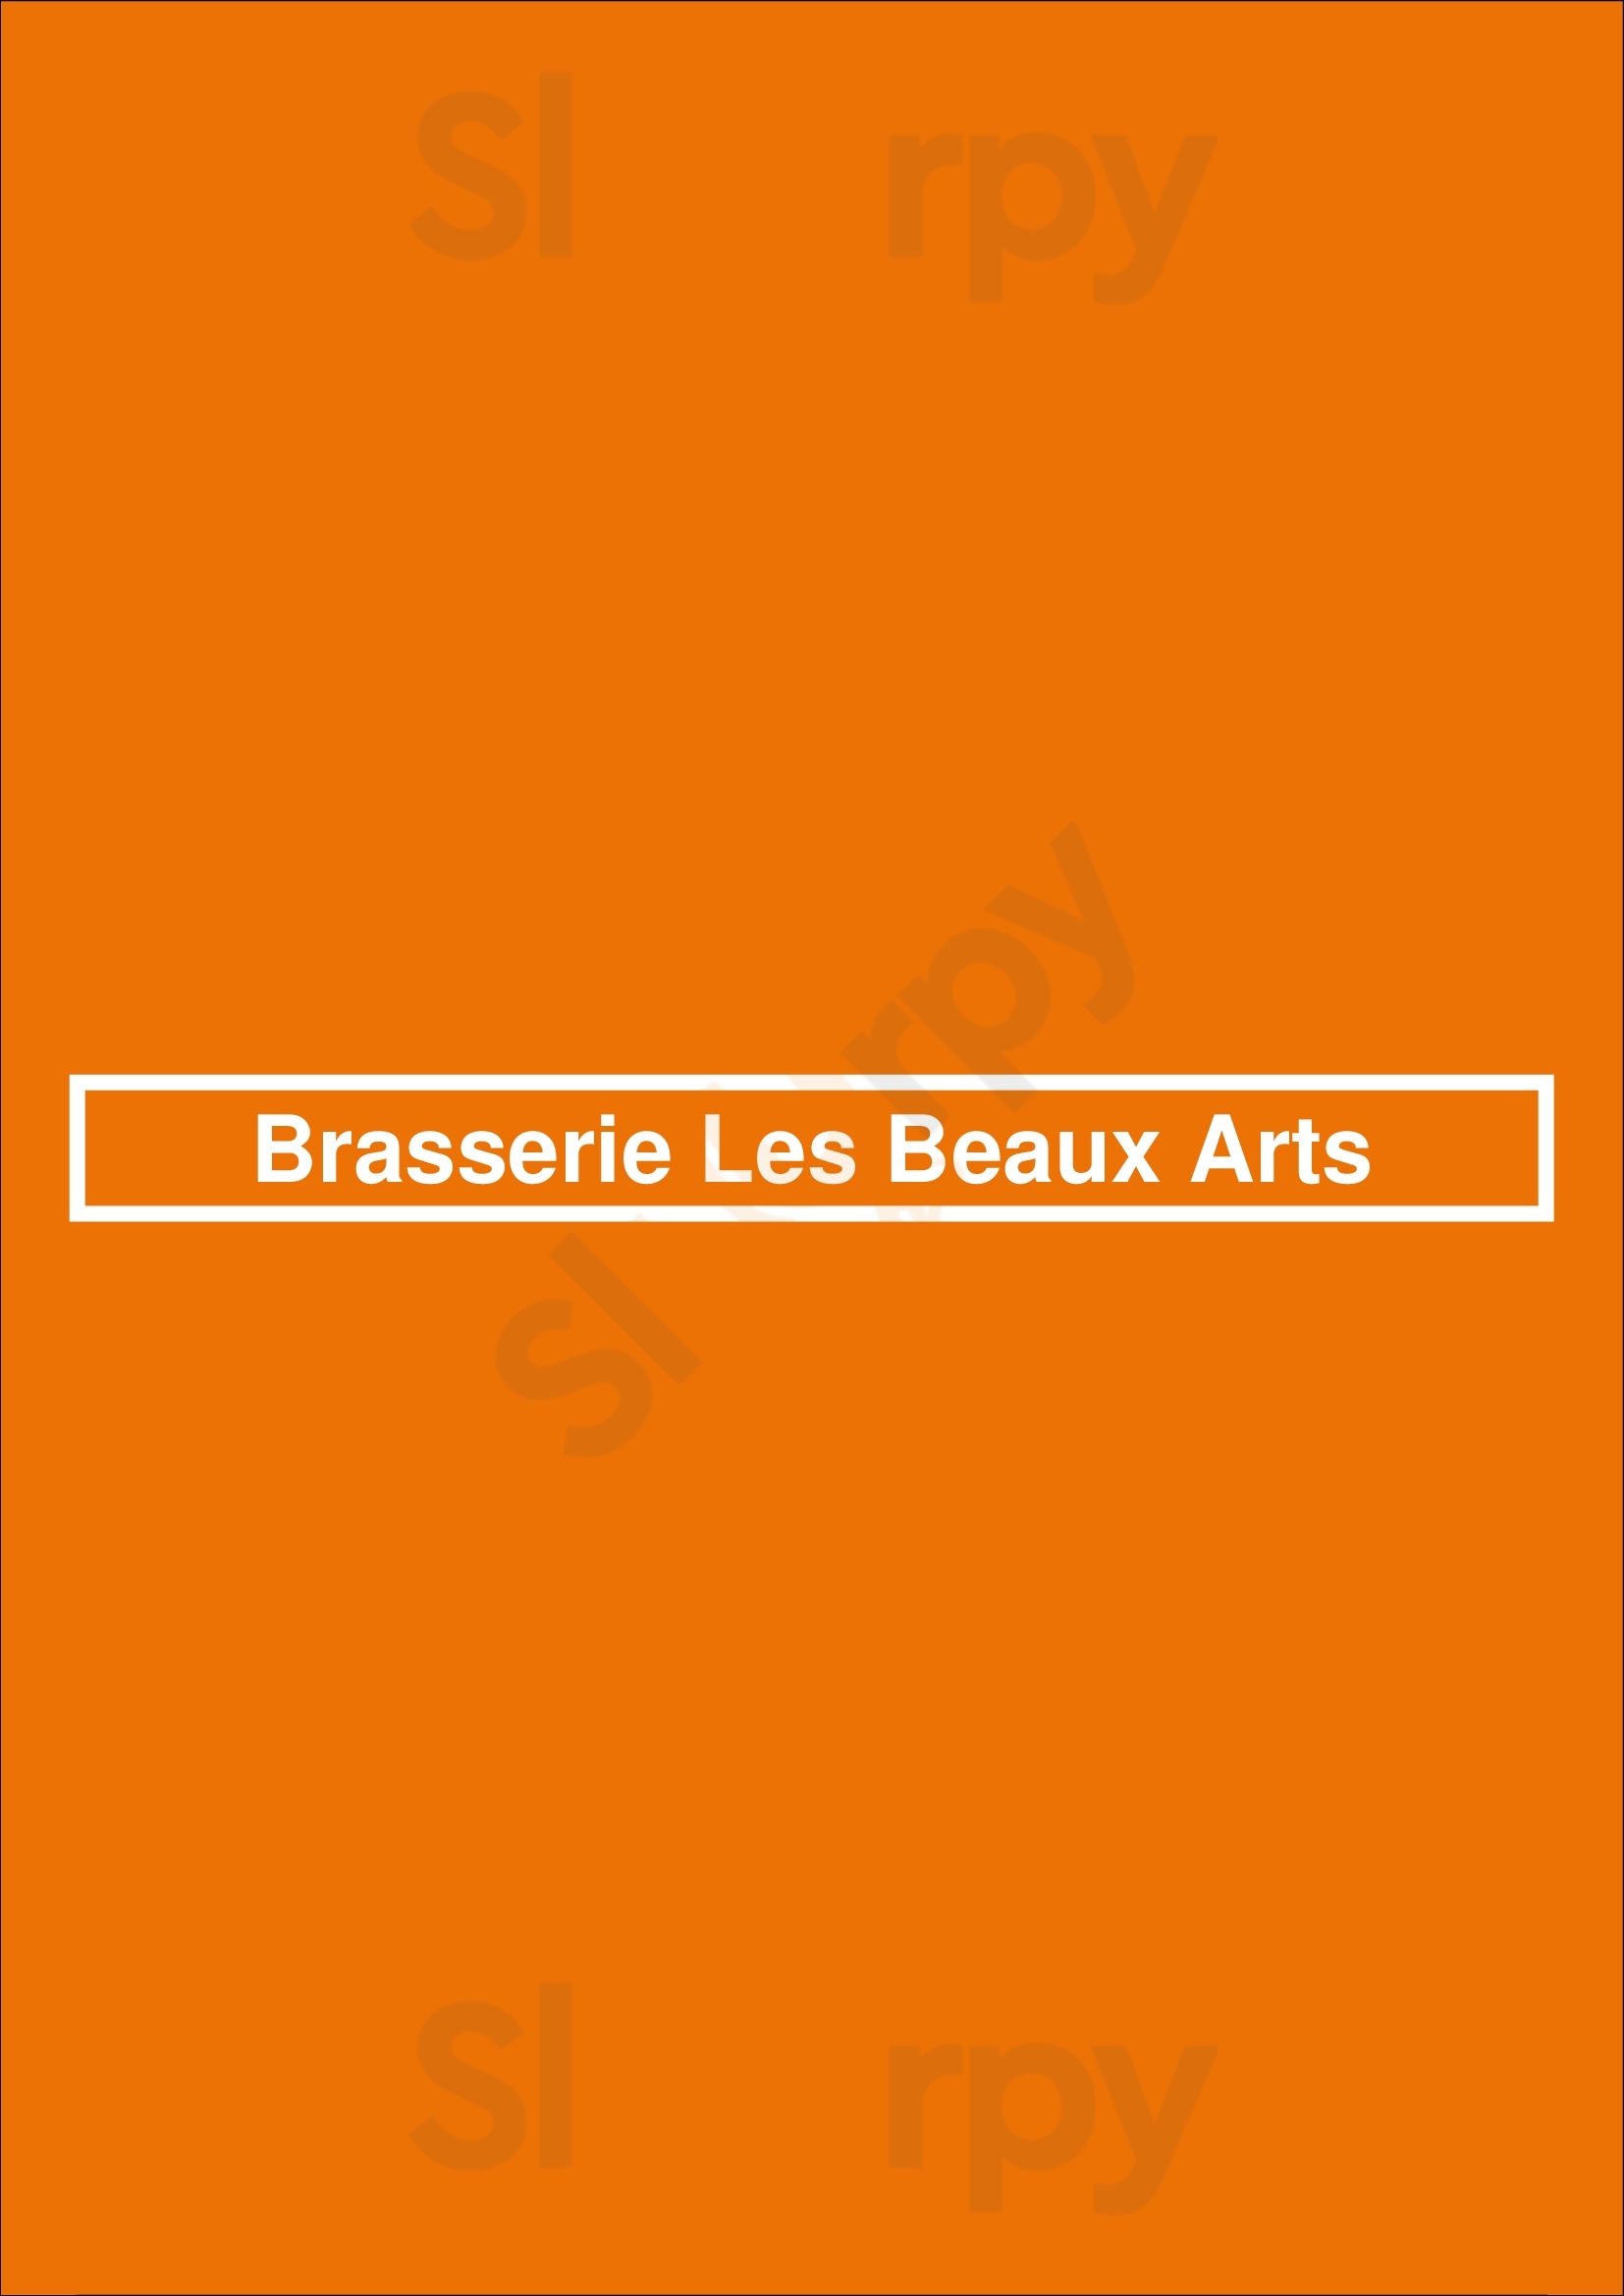 Brasserie Les Beaux Arts Toulouse Menu - 1